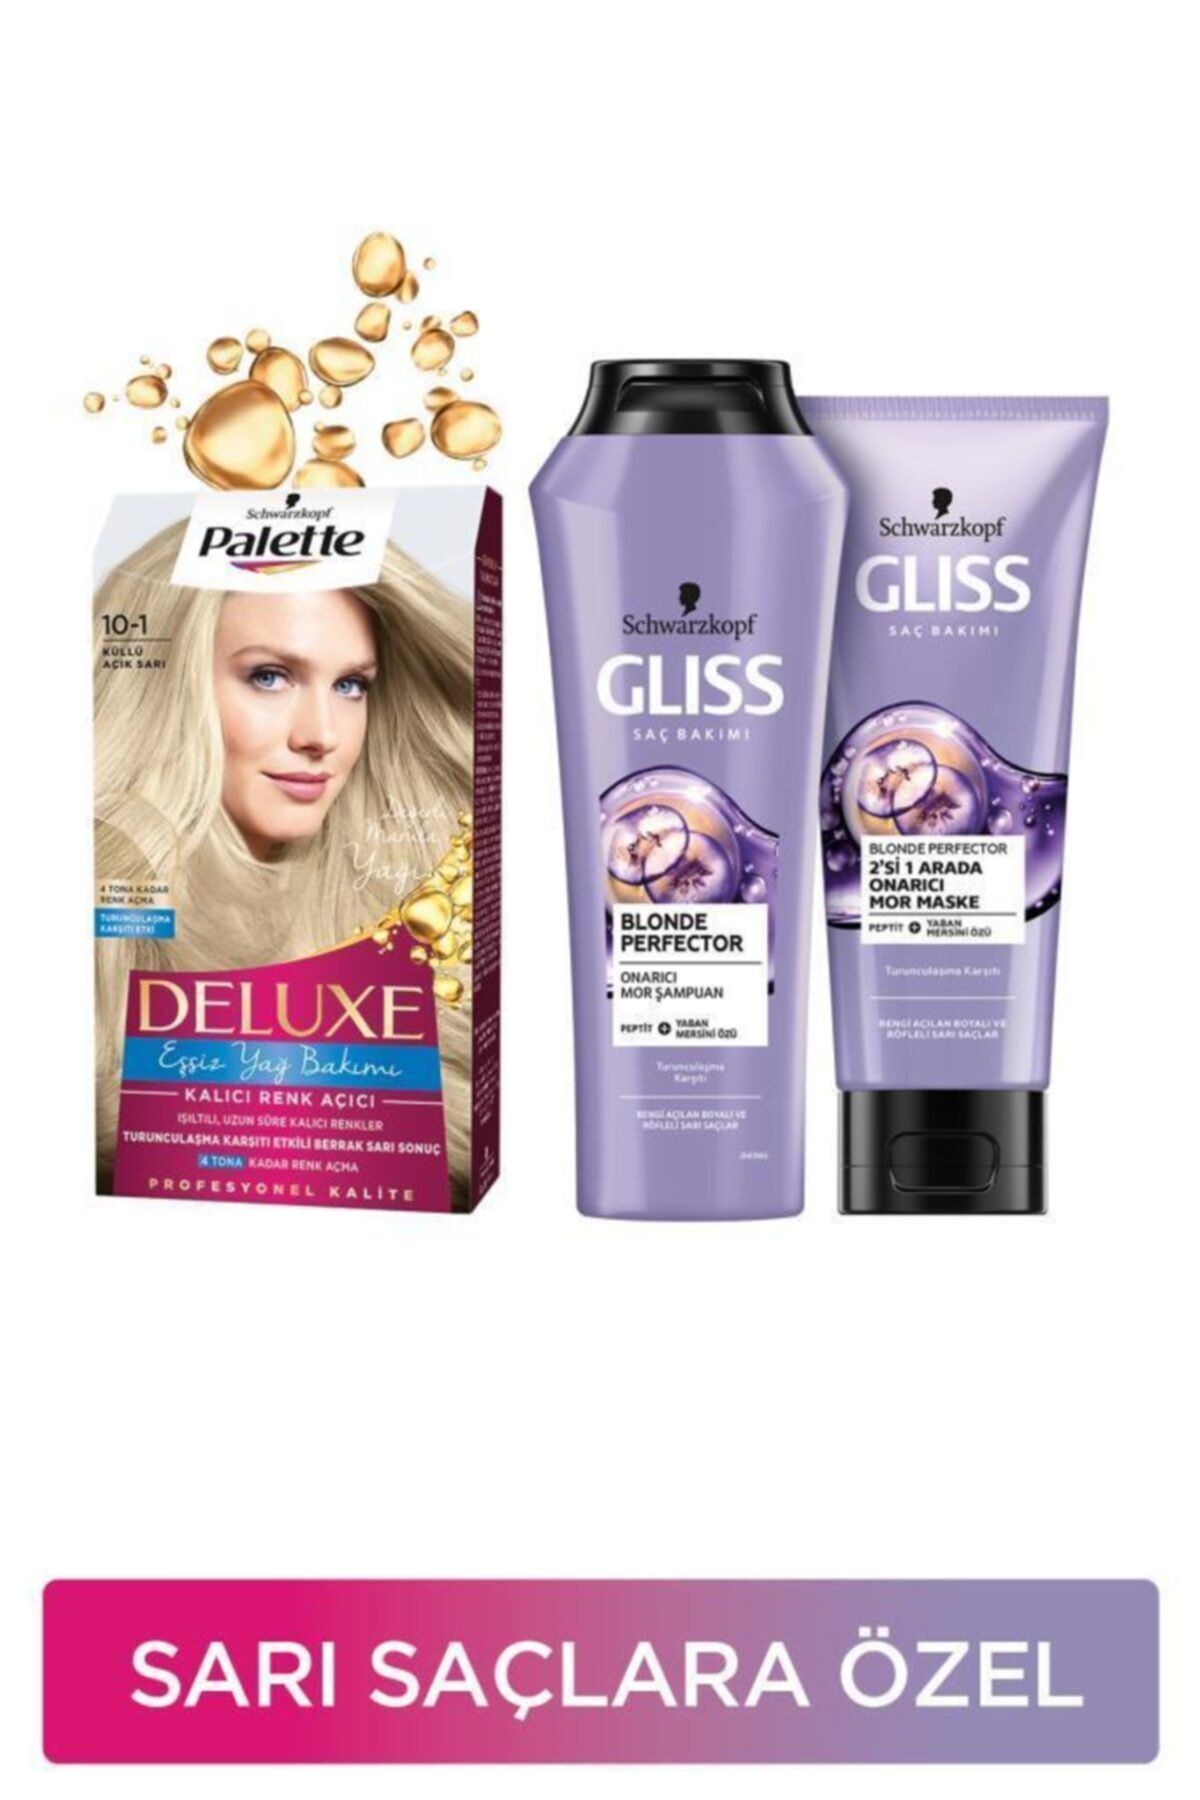 Gliss Sarı Saçlara Özel Bakım Seti Palette Deluxe Saç Boyası 10-1 Küllü Açık Sarı + Blonde Perfector